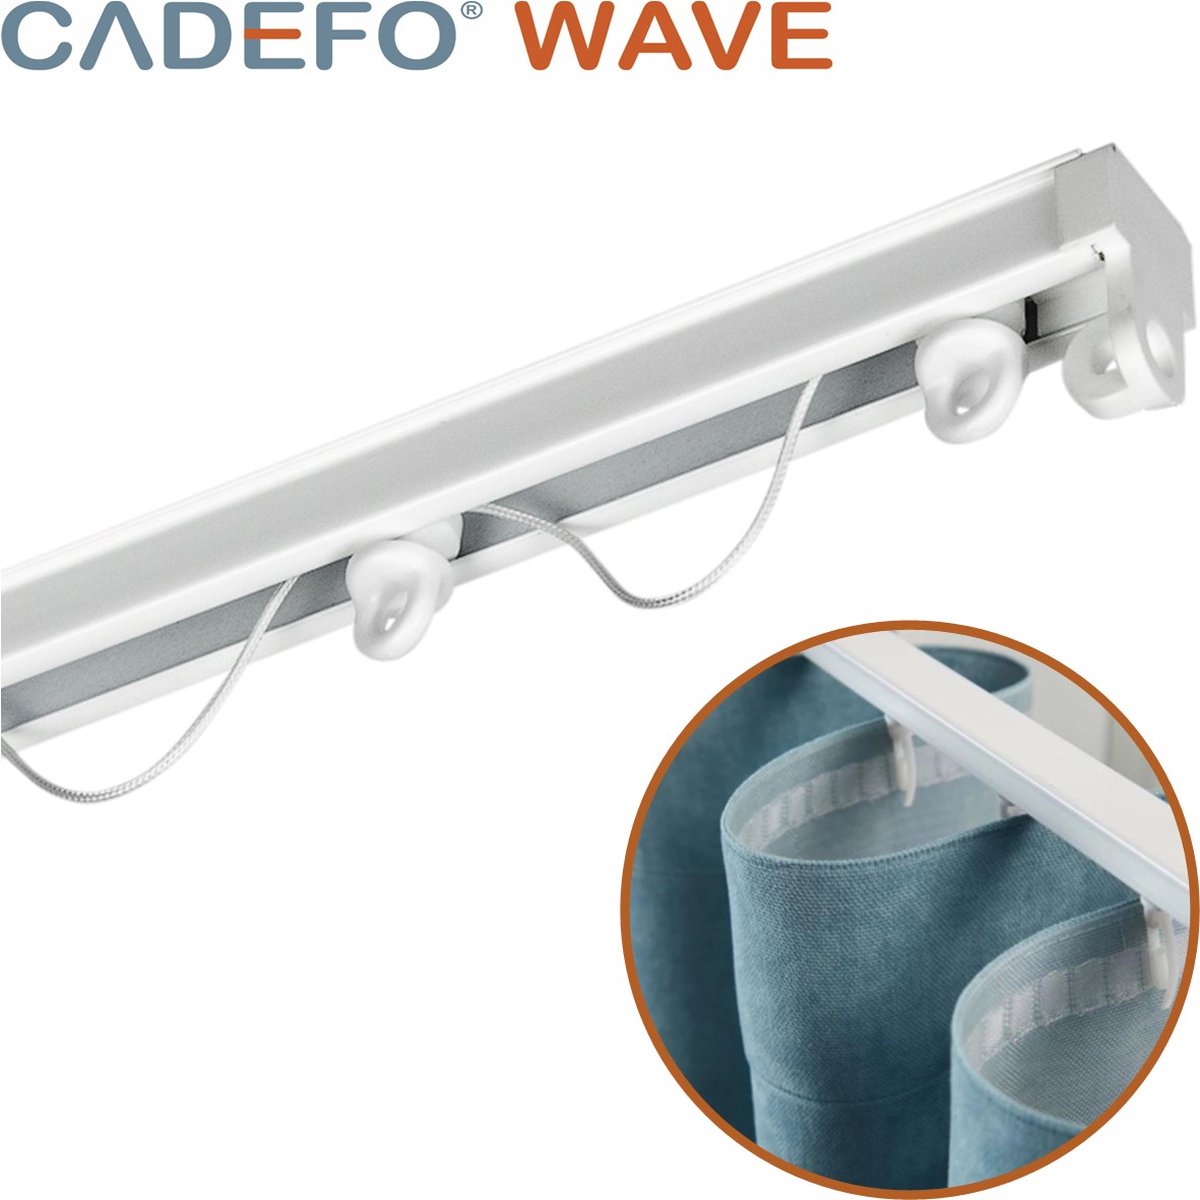 CADEFO WAVE (351 - 400 cm) Gordijnrails - Compleet op maat! - UIT 1 STUK - Leverbaar tot 6 meter - Plafondbevestiging - Lengte 361 cm